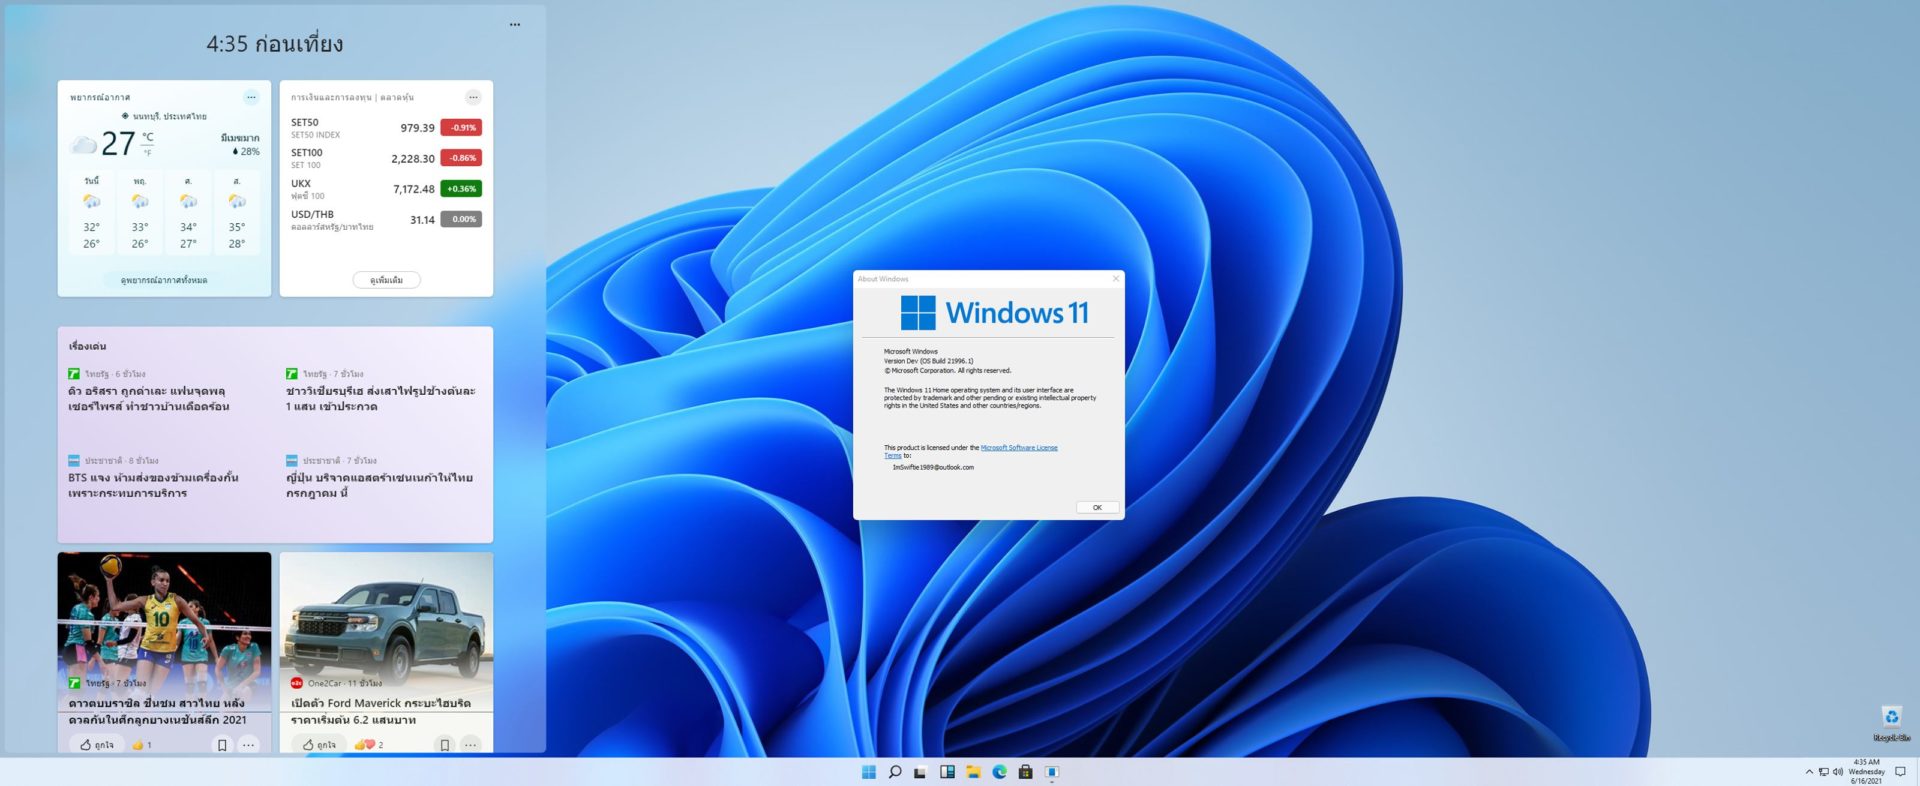 (Hands-On) แอบเล่น Windows 11 ก่อนเปิดตัวอย่างเป็นทางการ ยกโฉมดีไซน์เกือบหมด พร้อมฟีเจอร์ใหม่